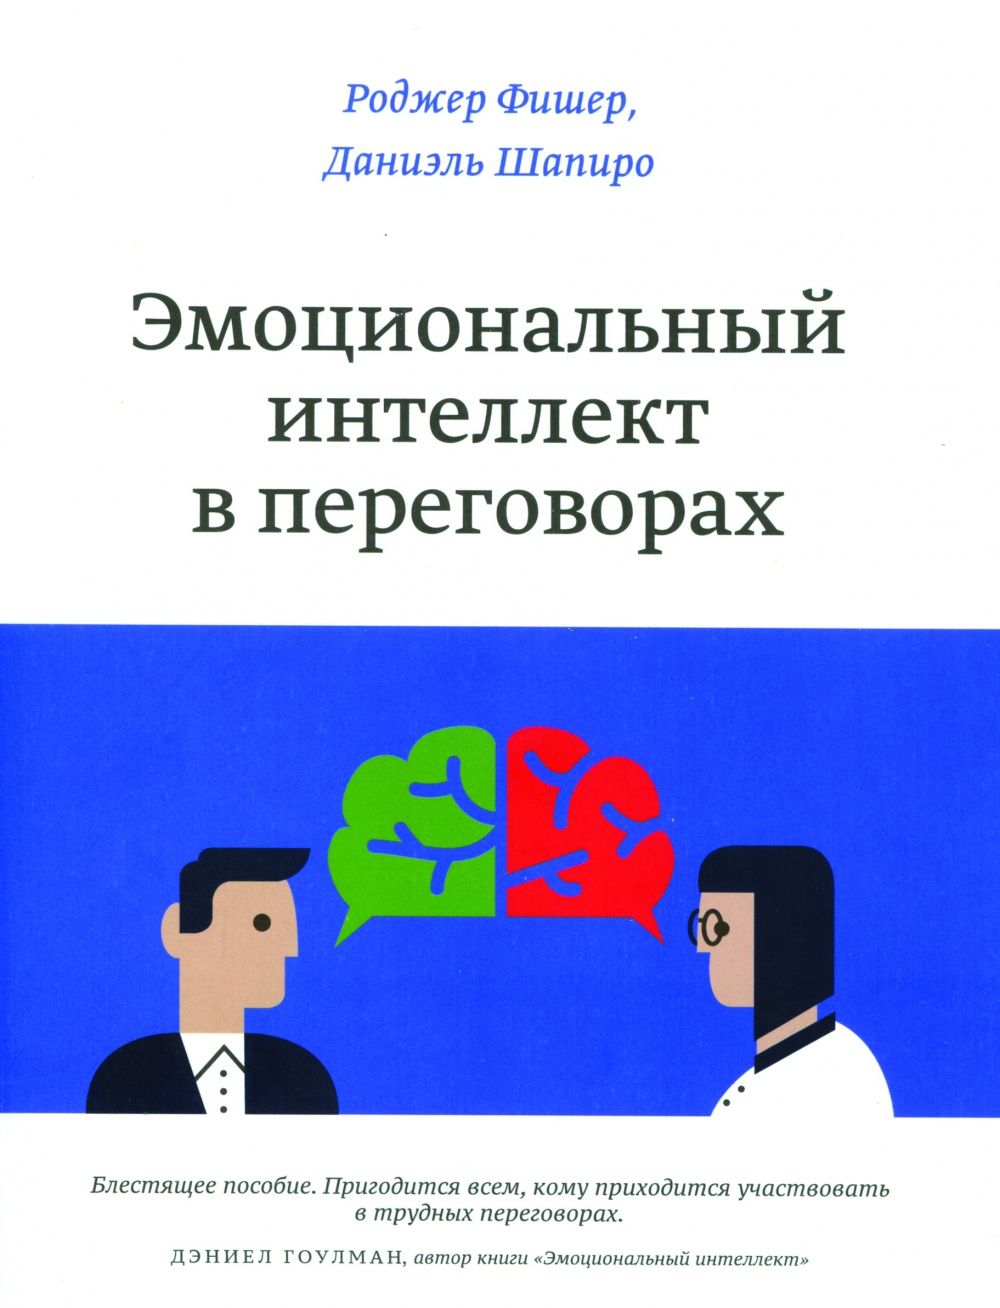 Р. Фишер, Д. Шапиро. «Эмоциональный интеллект в переговорах». — М.: «Манн, Иванов и Фербер», 2015